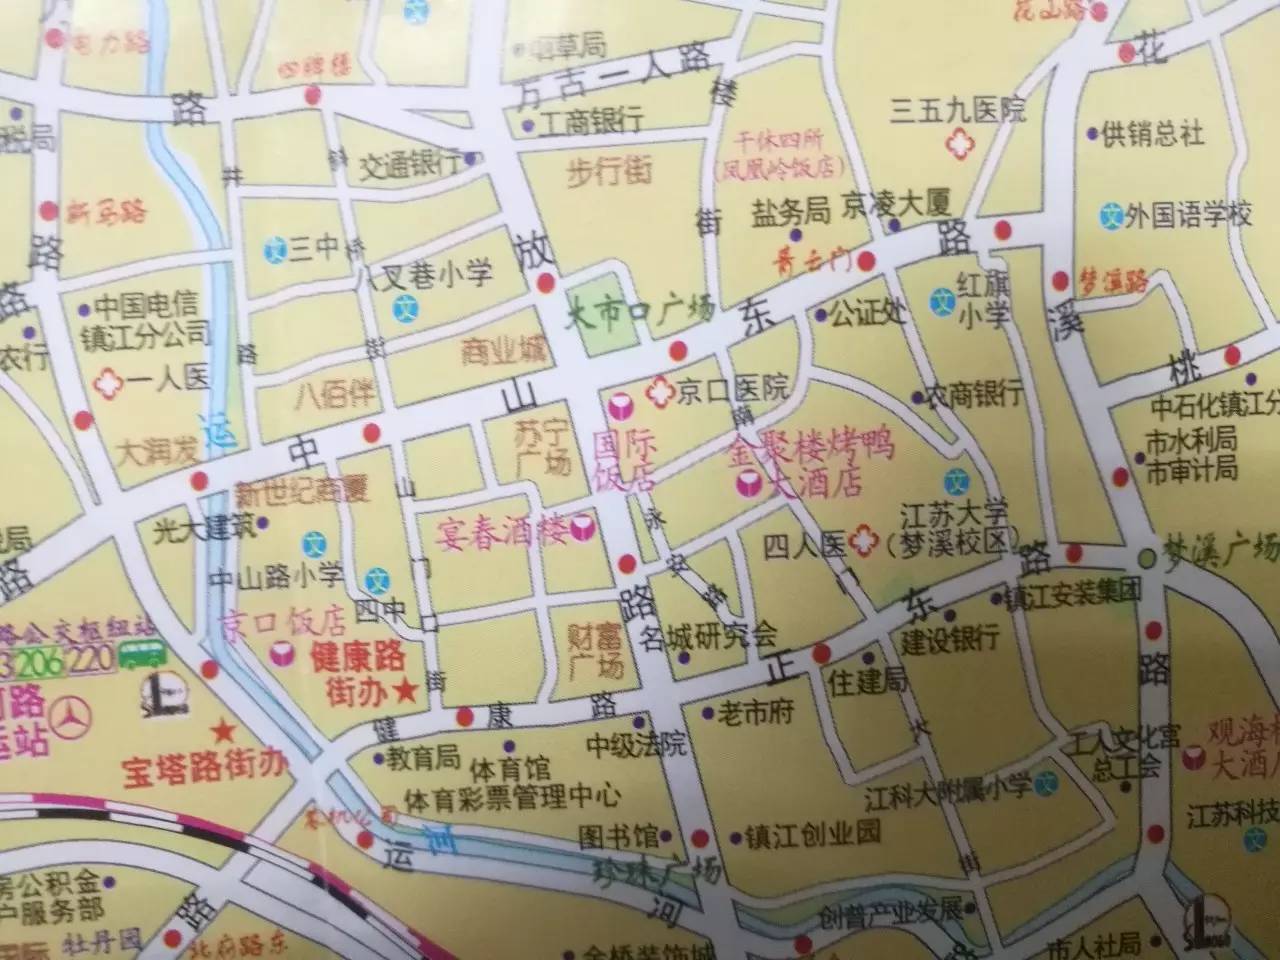 帮我鉴别下真假—新买的2017年镇江交通旅游图!图片